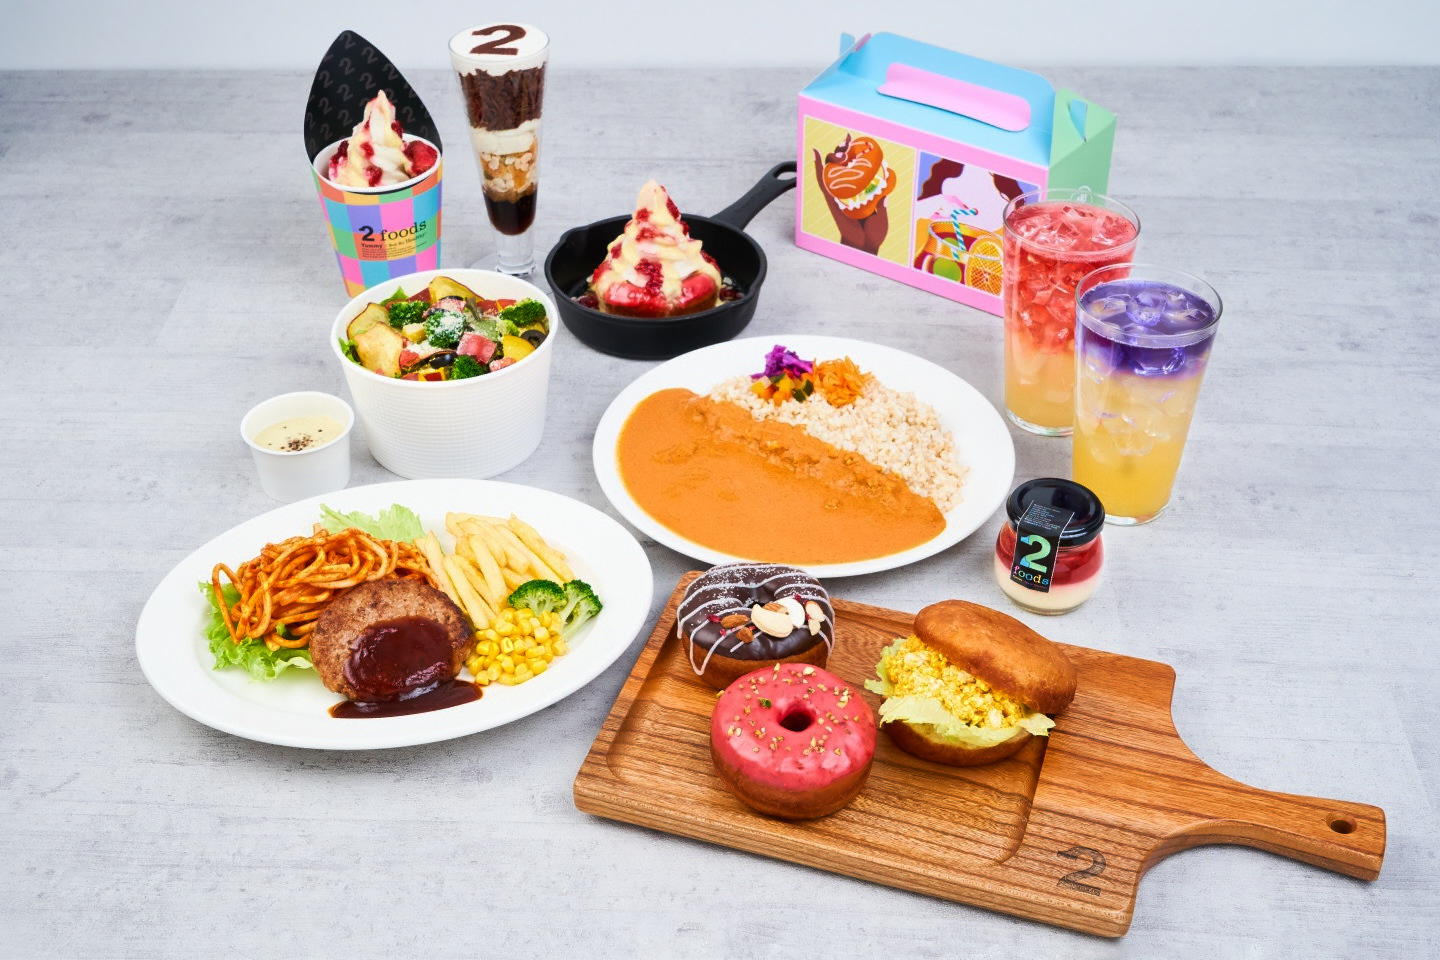 日本発のプラントベースフードを国内・世界へ発信国内2番目のフラッグシップ、「2foods」銀座ロフト店オープンのサブ画像2